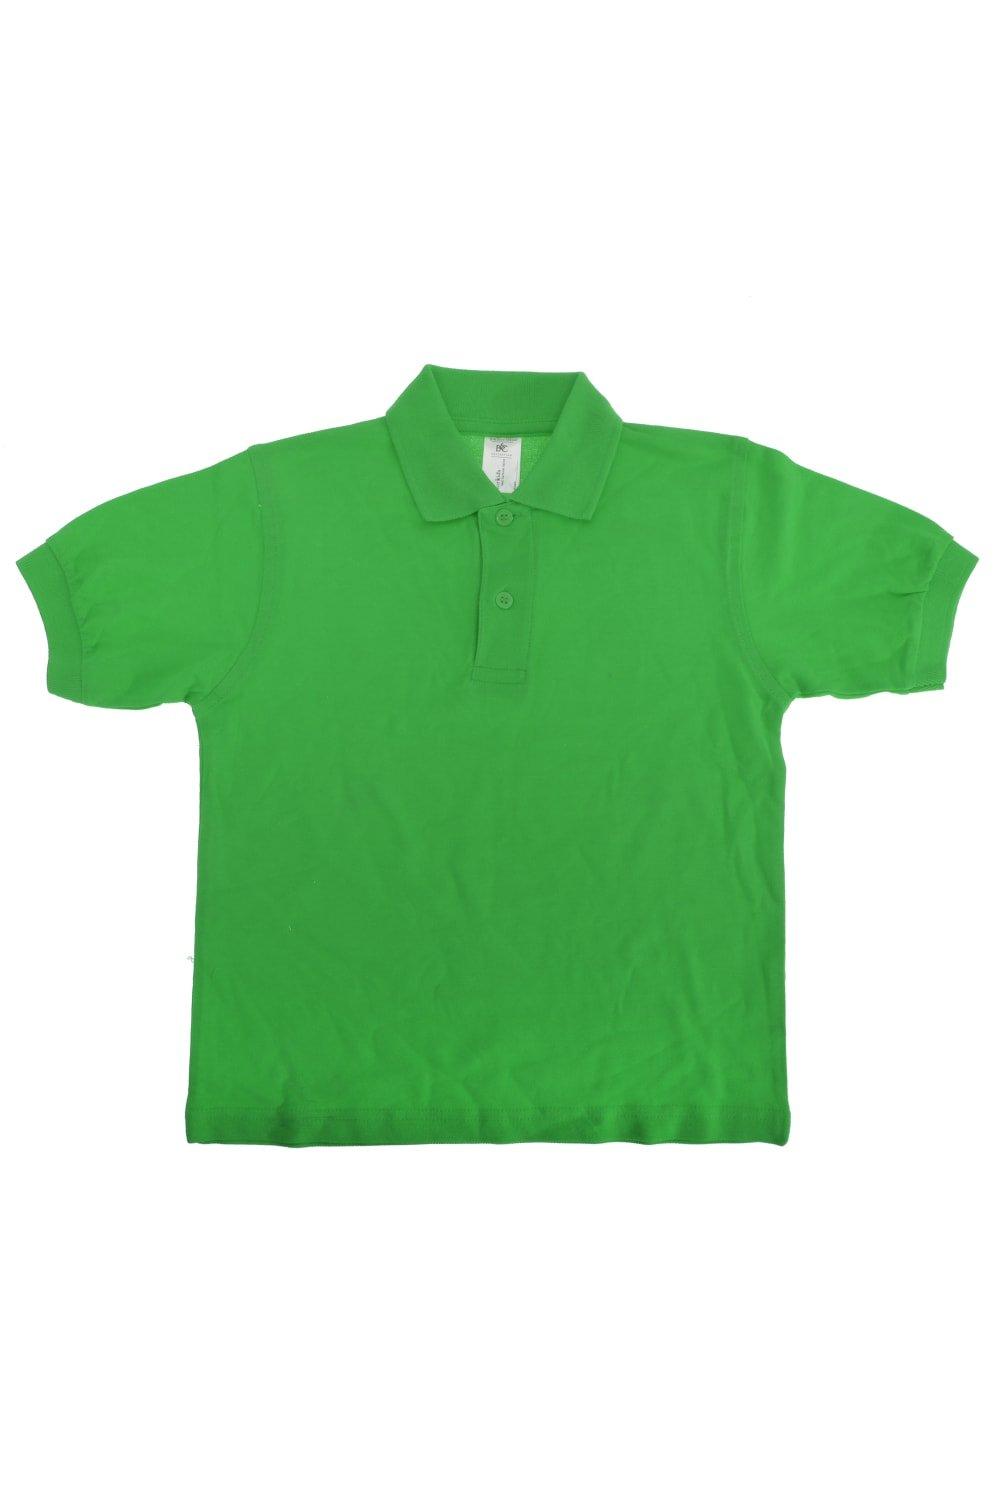 Рубашка-поло Safran B&C, зеленый